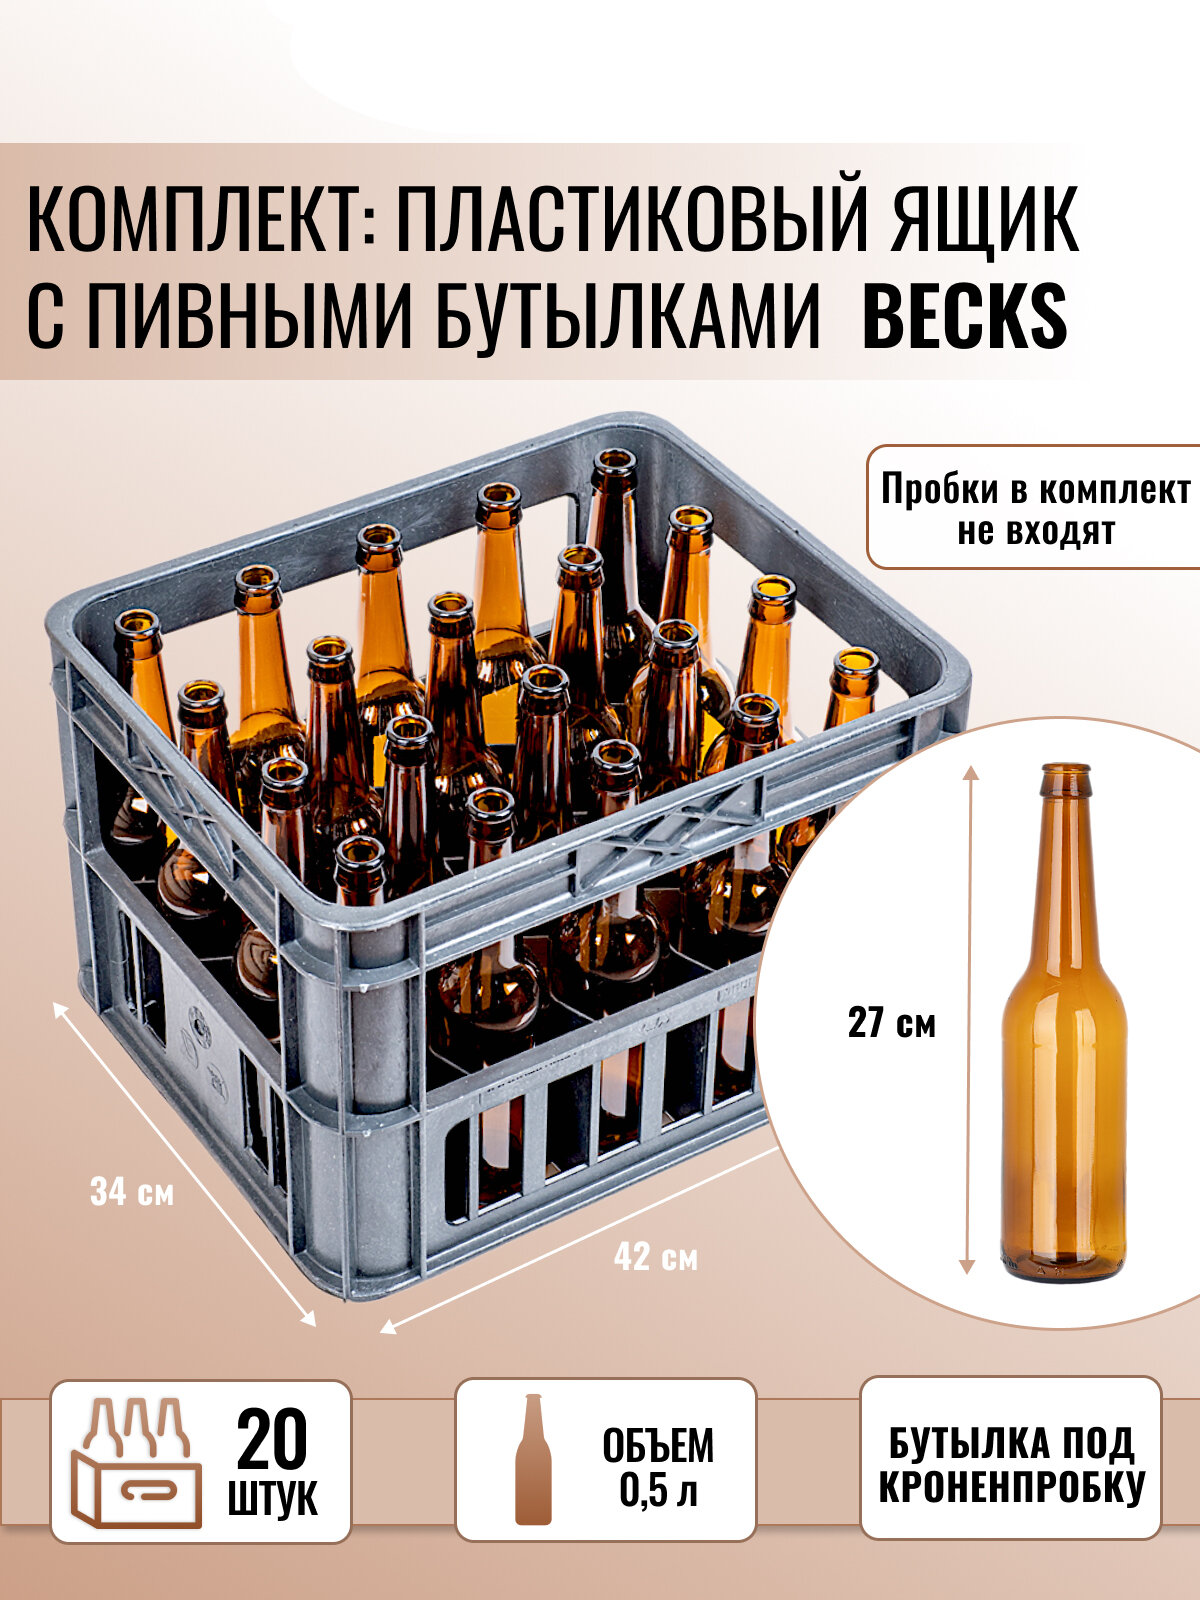 Ящик пластиковый + Бутылка пивная Becks под кронен пробку, 0.5 л, коричневая, 20 шт.